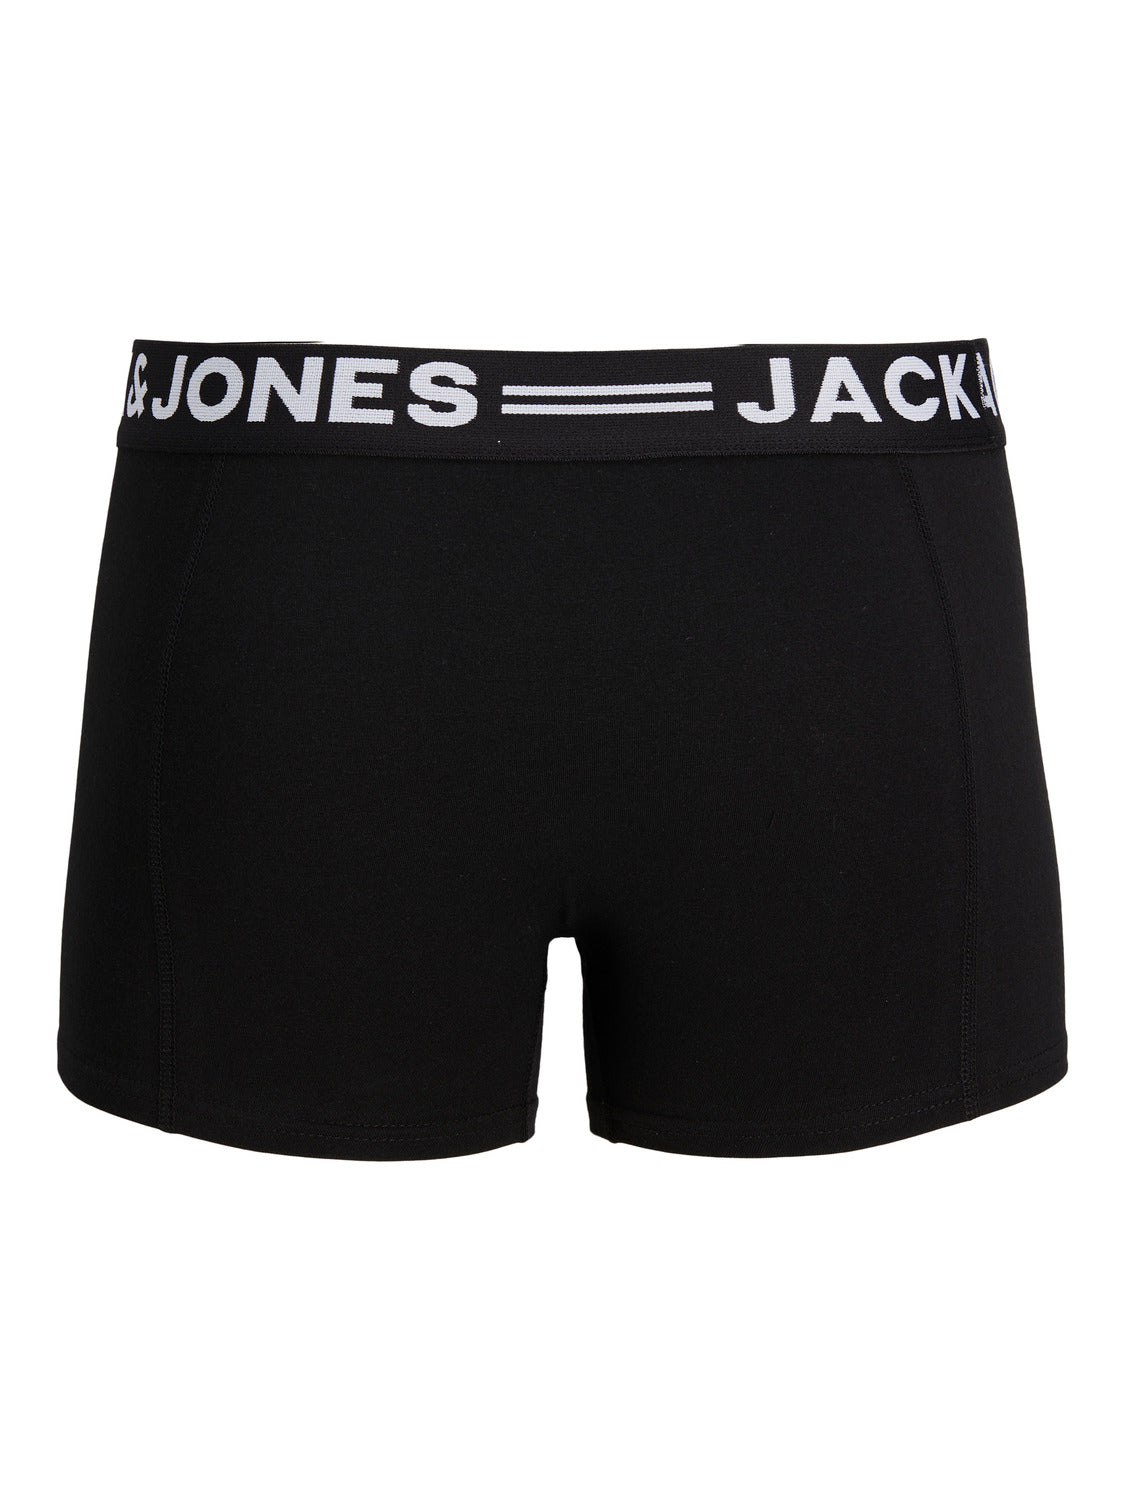 Jack & Jones - Sense Trunk : Black